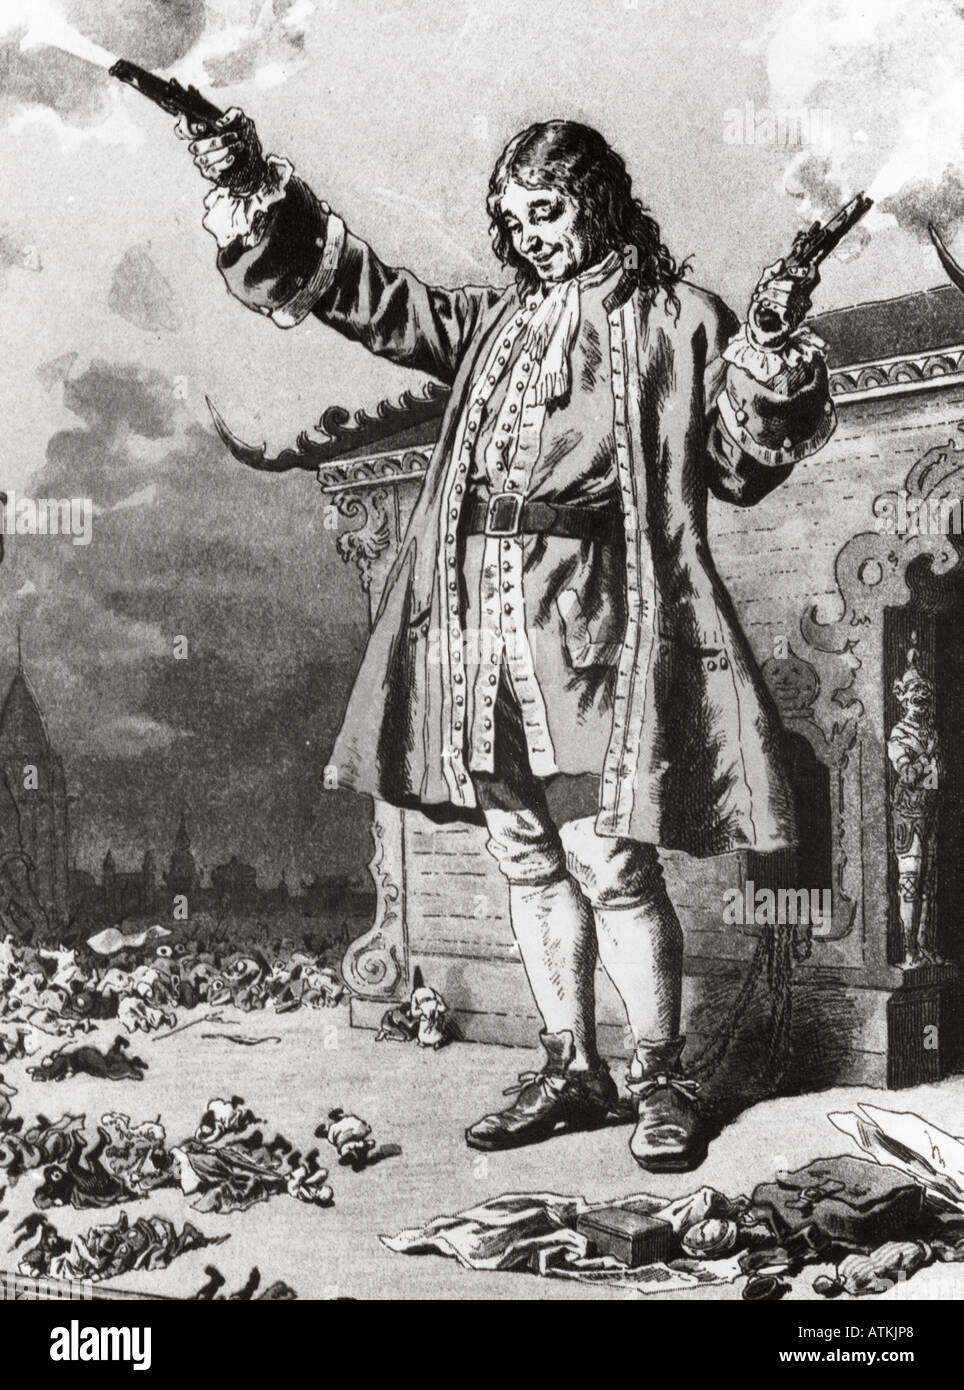 Los viajes de Gulliver, 1726 ilustración para la novela de Jonathan Swift - véase la descripción a continuación para más detalles Foto de stock